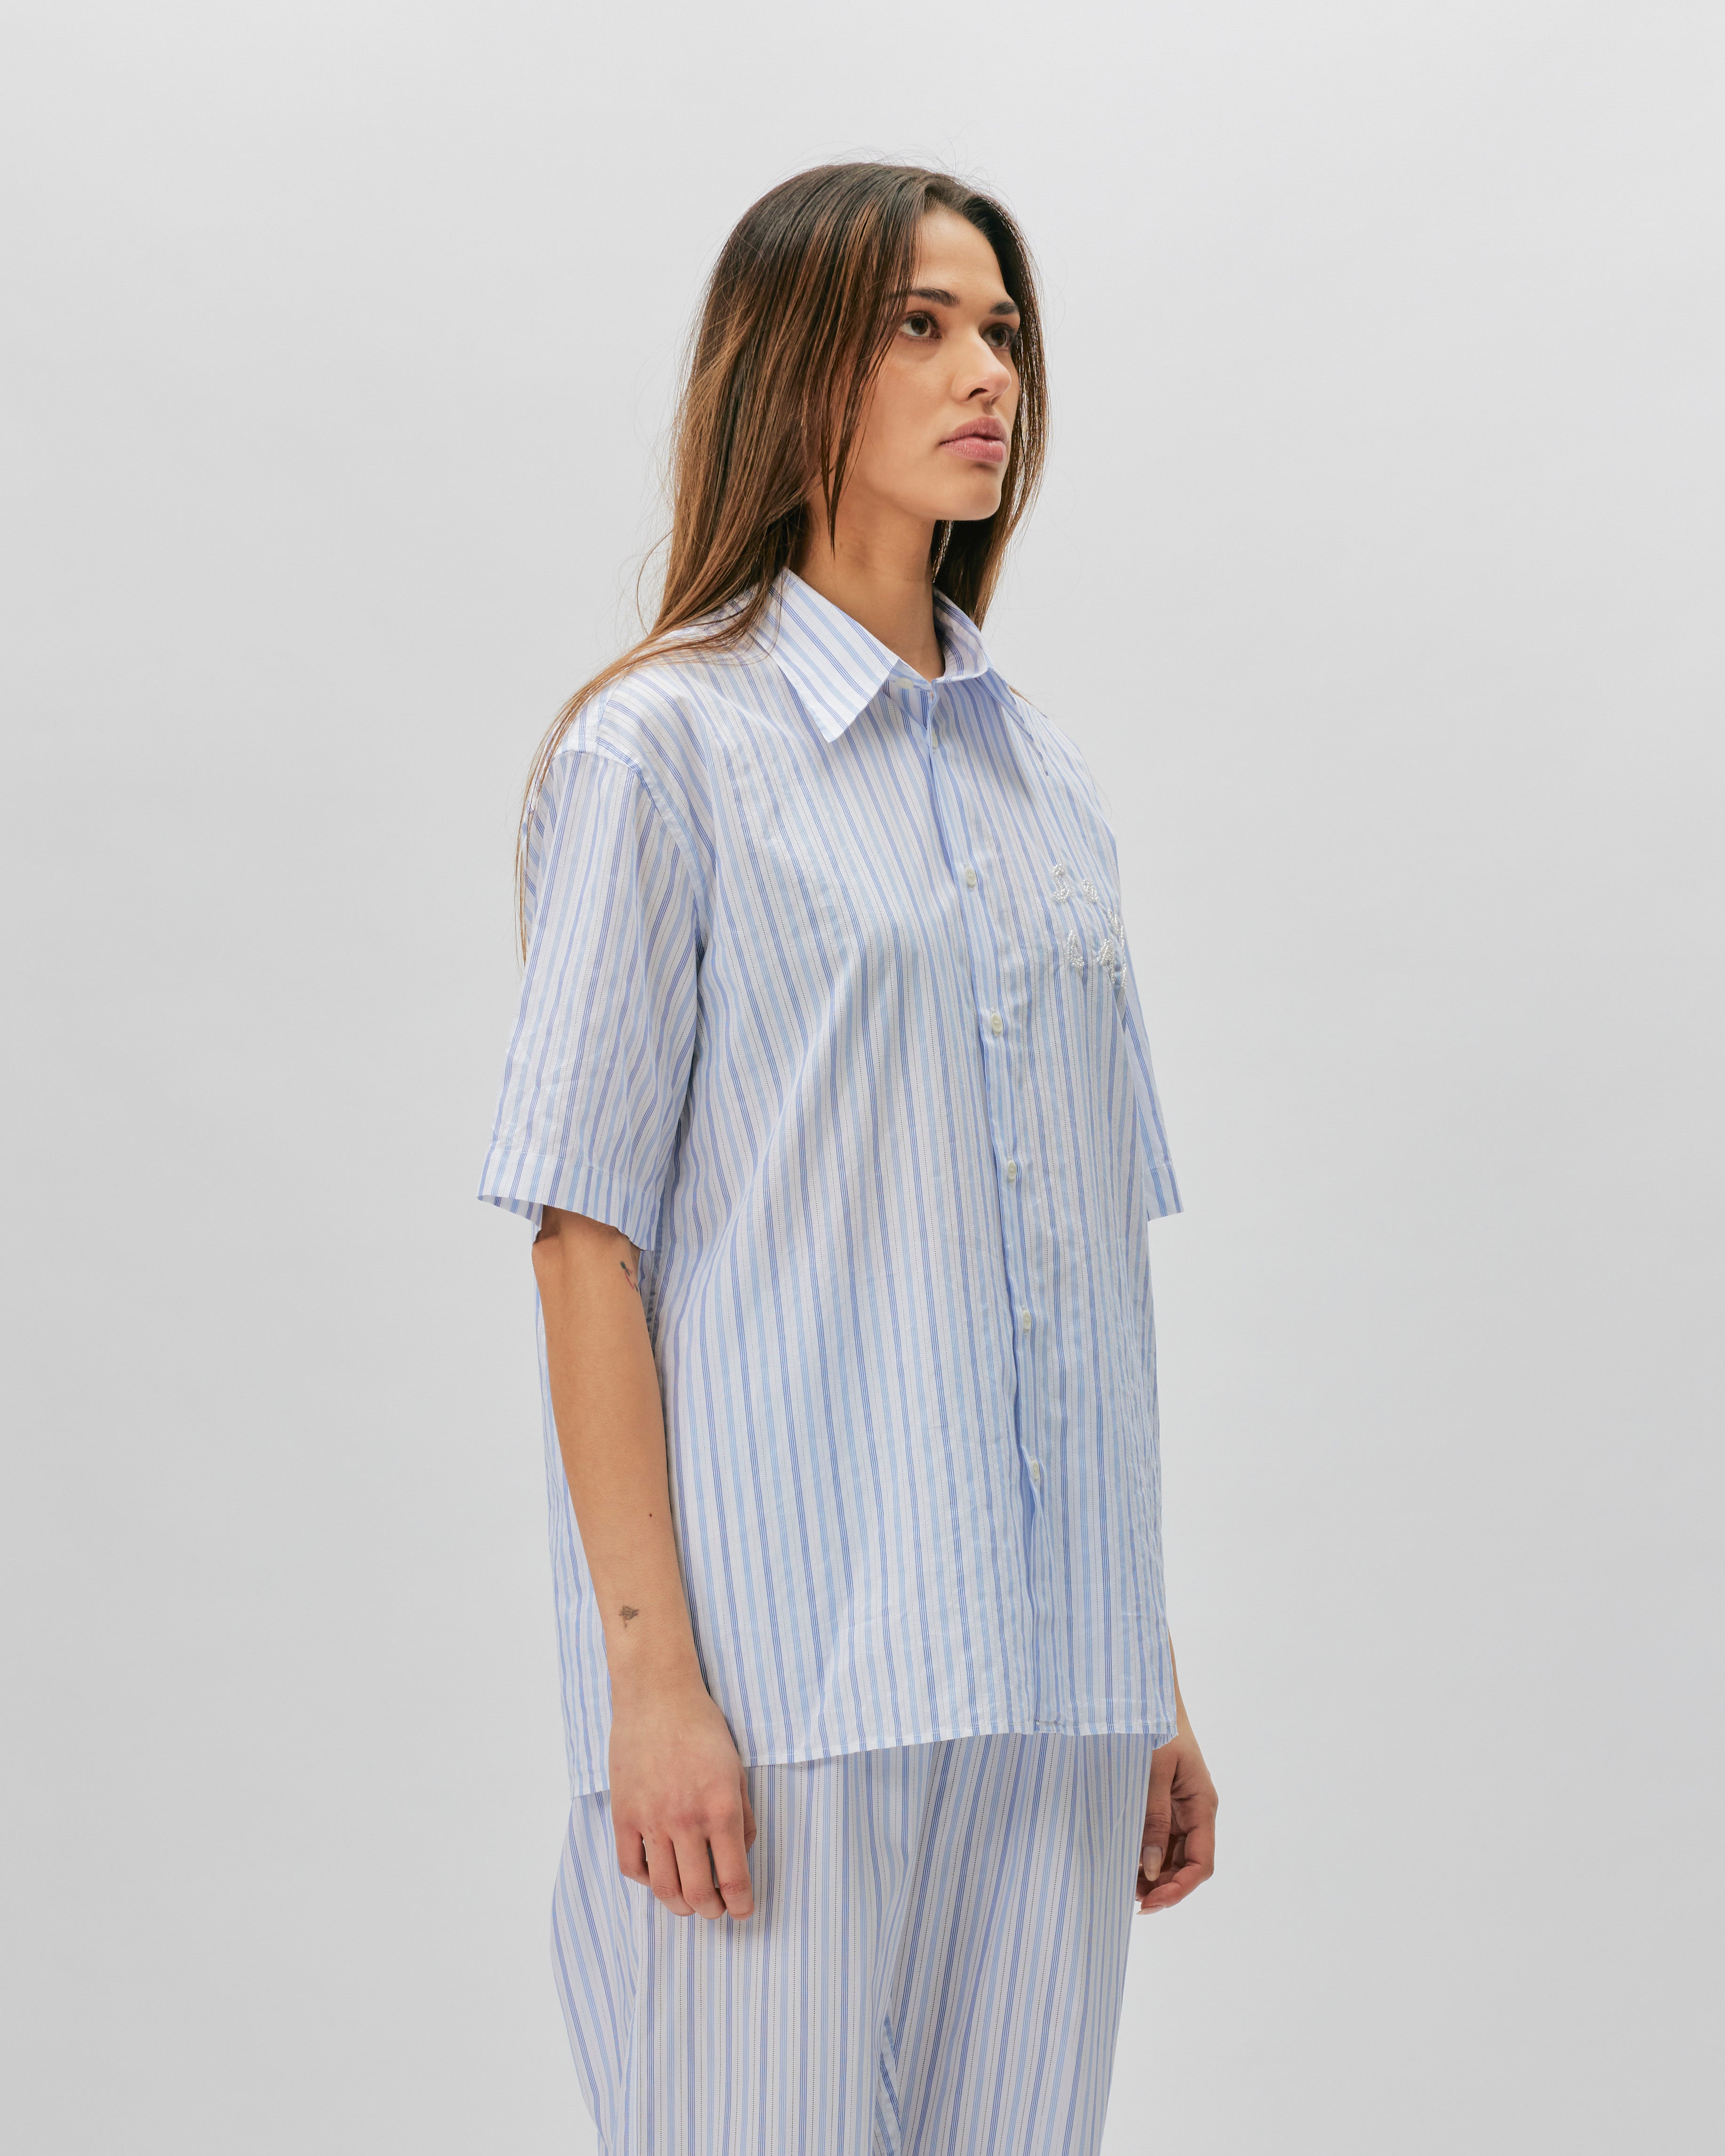 SOULLAND Jodie Shirt White /Blue 41032-1269-WHT/BLU